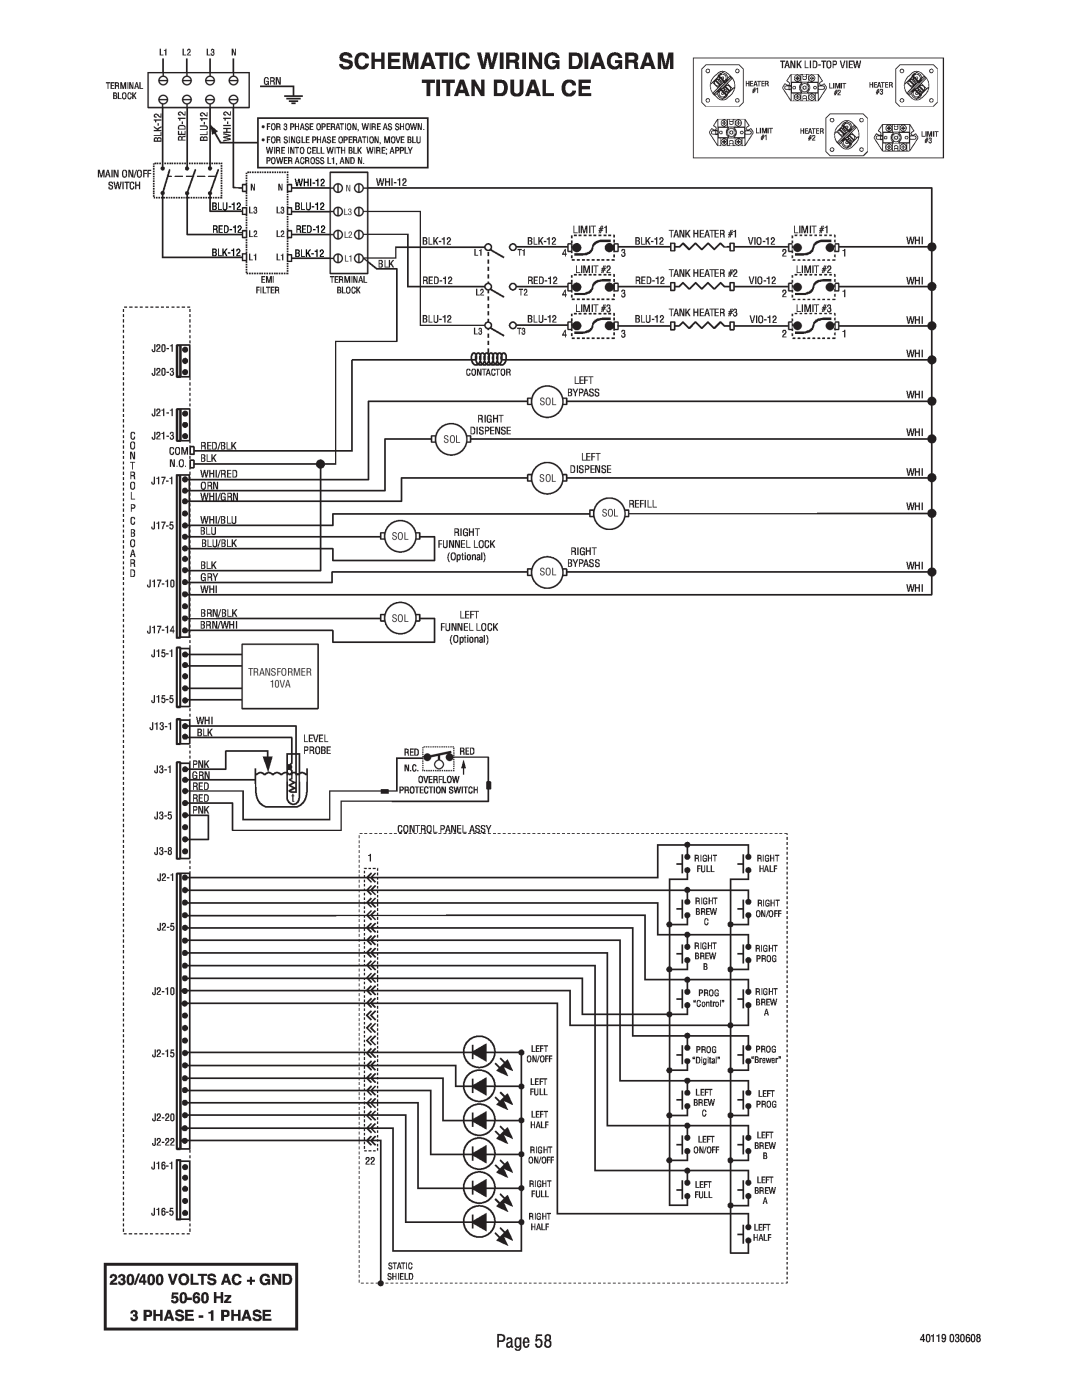 Bunn TITAN DUAL manual Titan Dual Ce, Schematic Wiring Diagram, PHASE - 1 PHASE, 230/400 VOLTS AC + GND, 50-60 Hz 